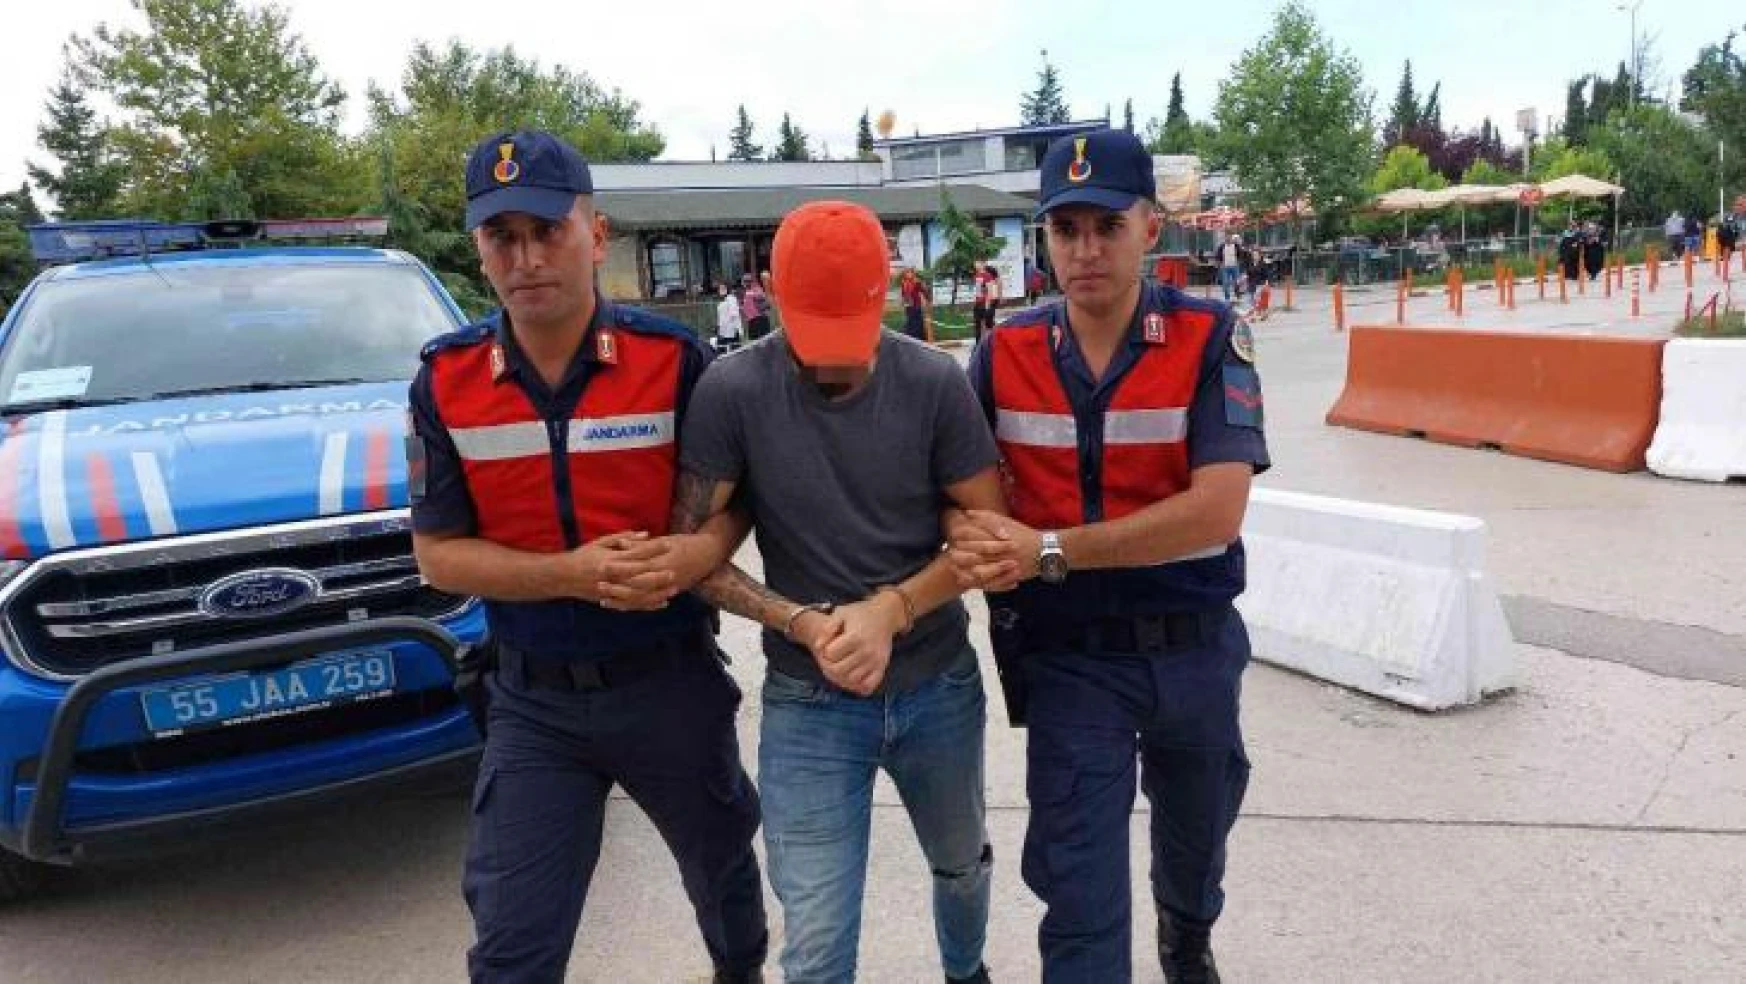 Samsun'da hırsızlık iddiasına gözaltı